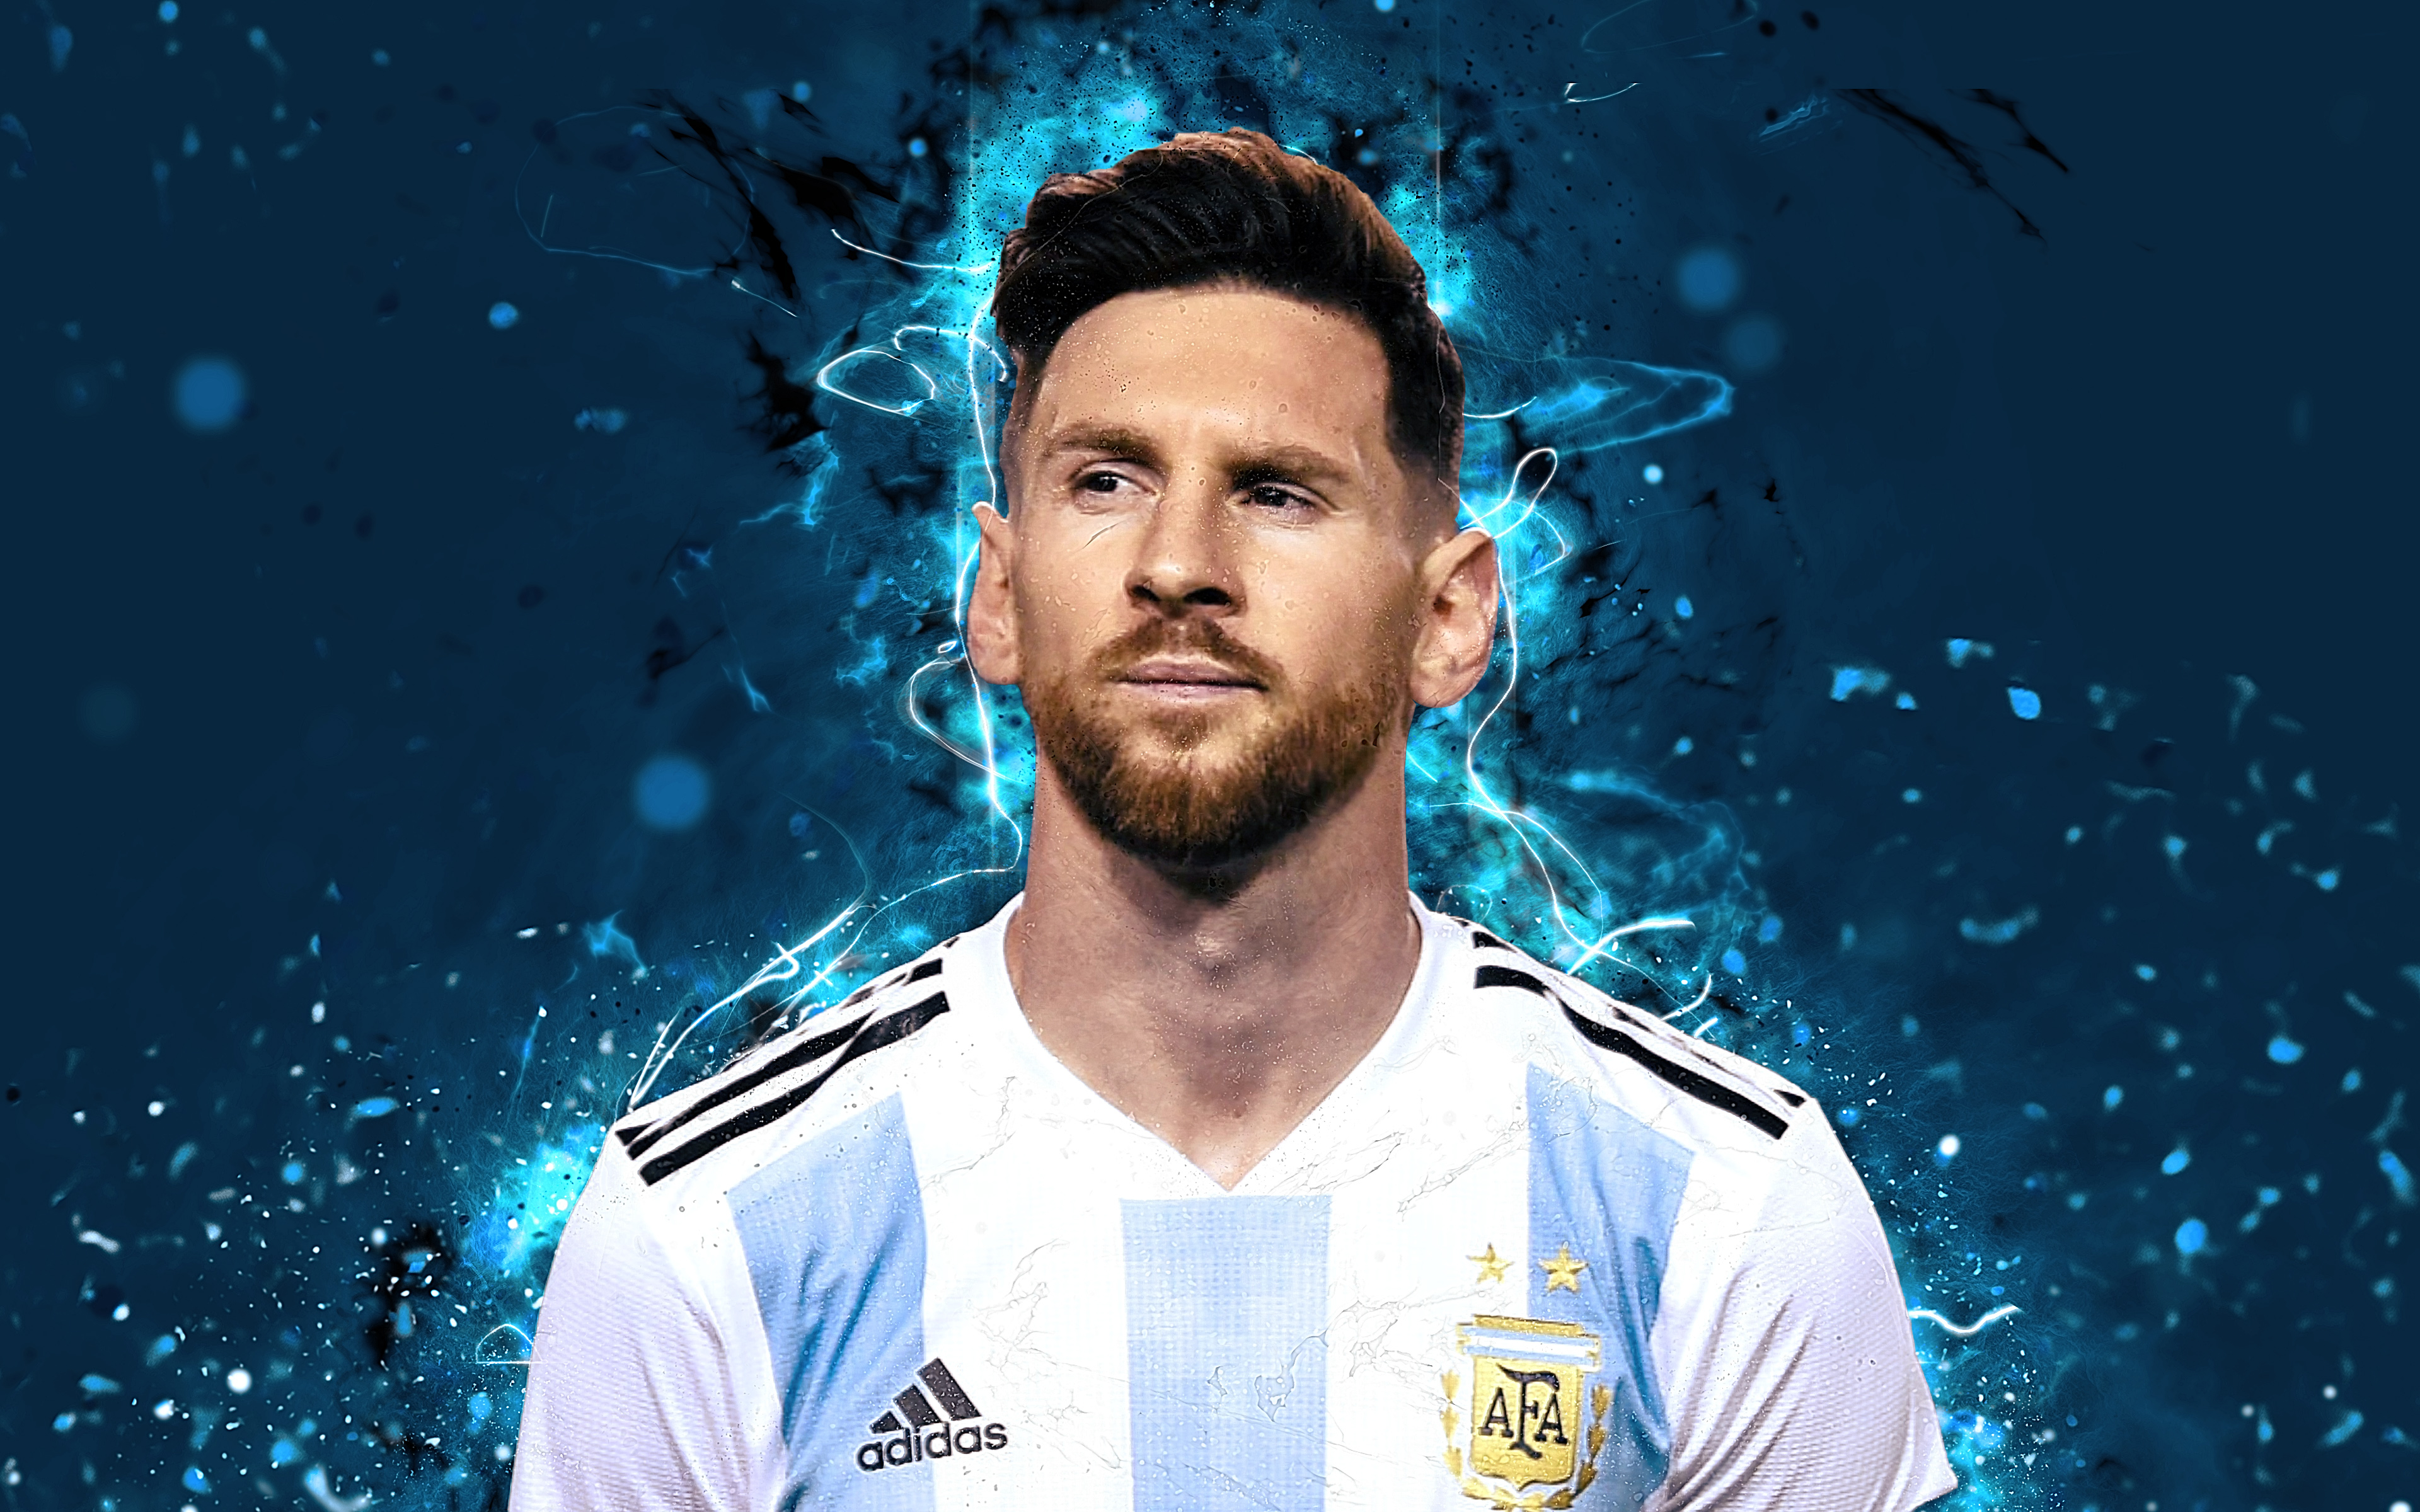 Chào mừng đến với bức ảnh về cầu thủ huyền thoại Lionel Messi! Bạn sẽ được thưởng thức những khoảnh khắc đáng nhớ của \